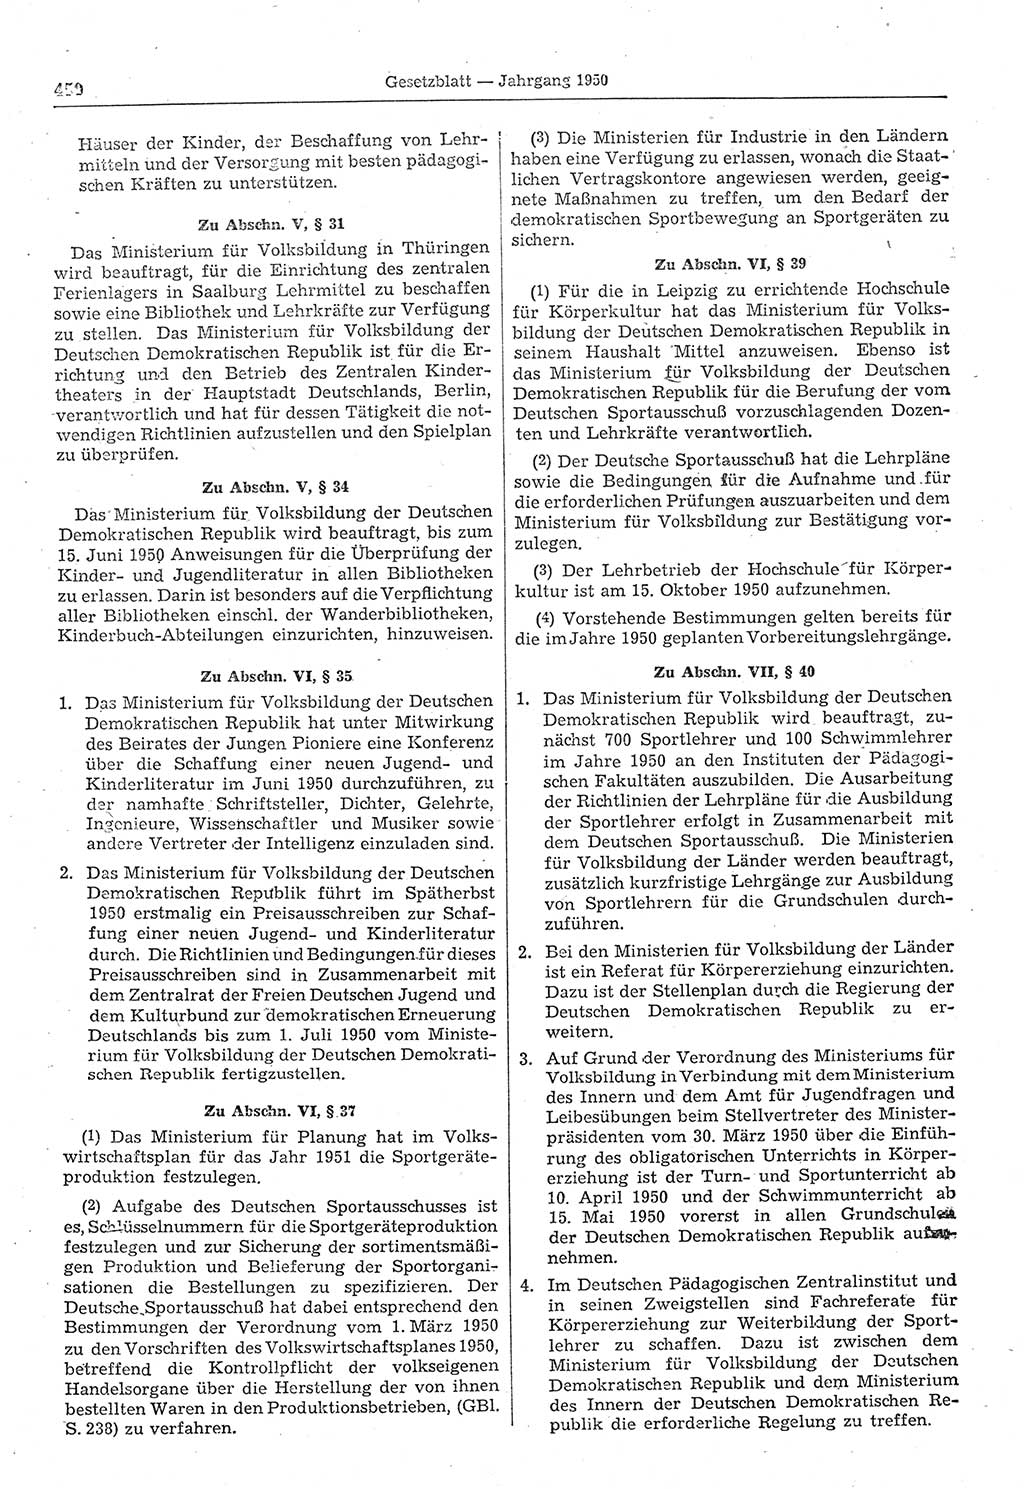 Gesetzblatt (GBl.) der Deutschen Demokratischen Republik (DDR) 1950, Seite 450 (GBl. DDR 1950, S. 450)